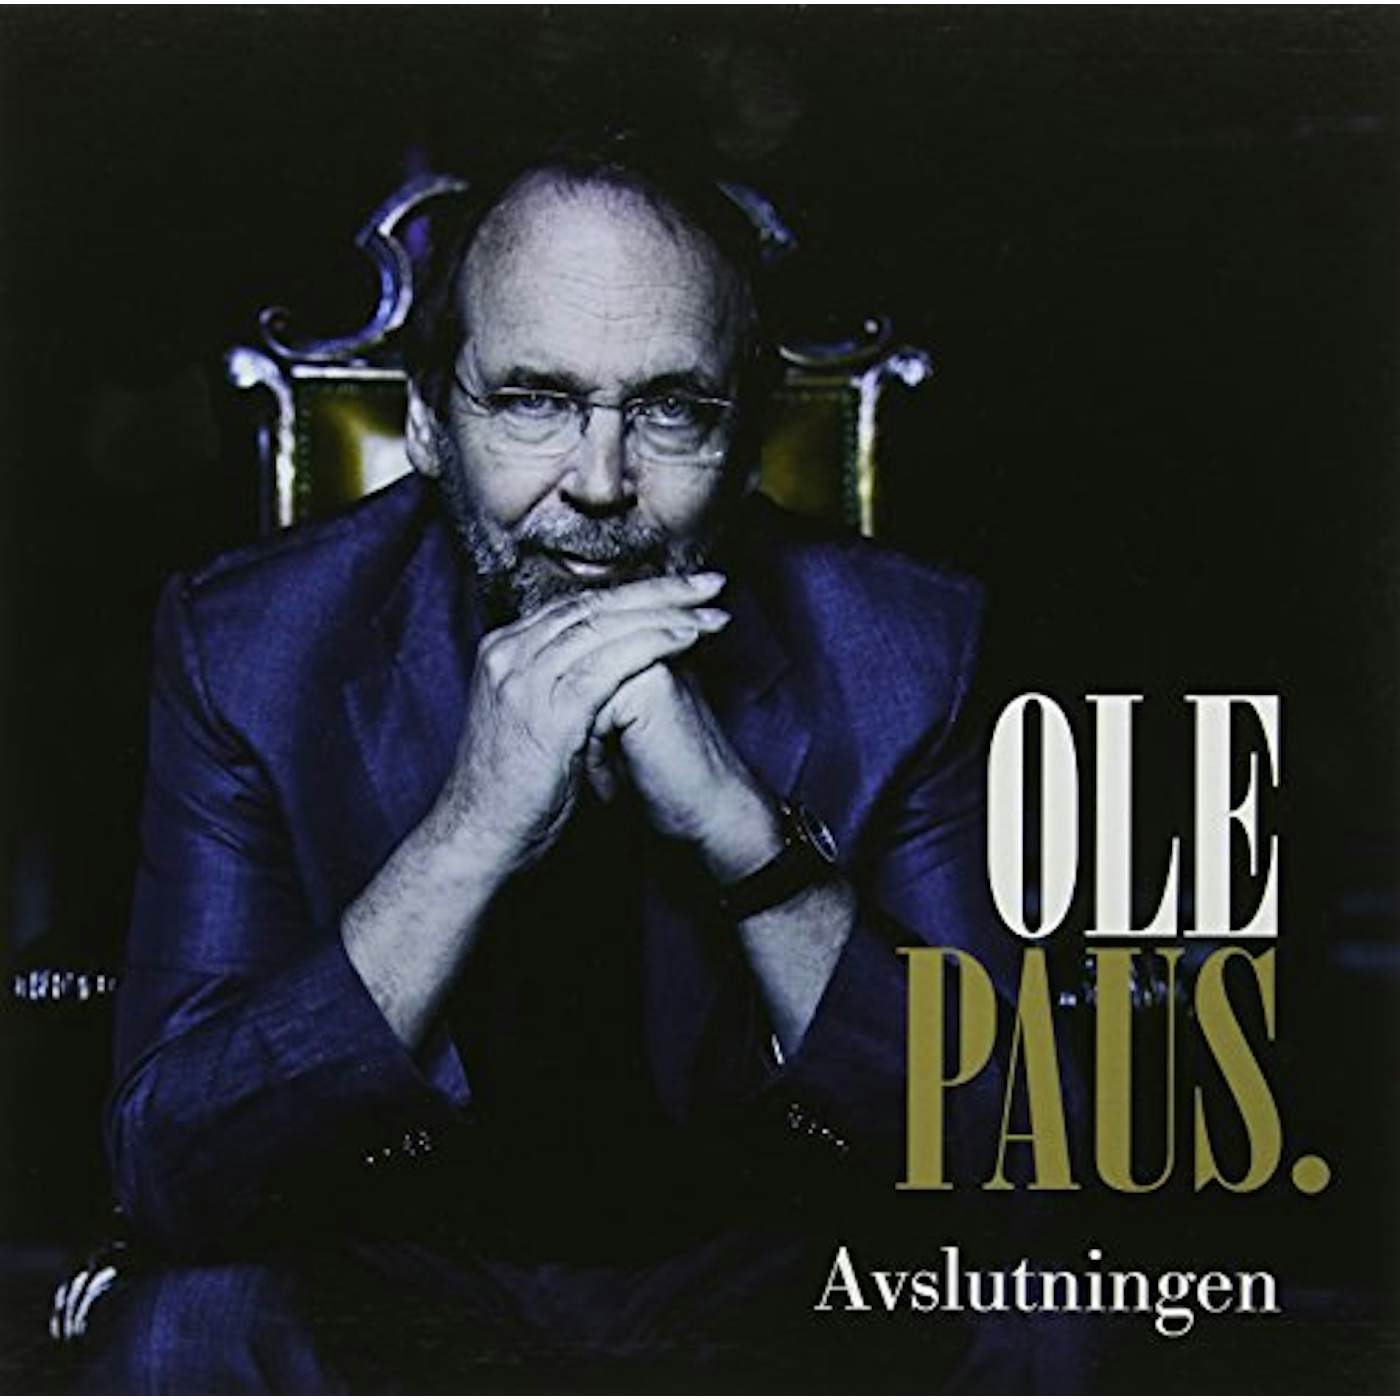 Ole Paus Avslutningen Vinyl Record